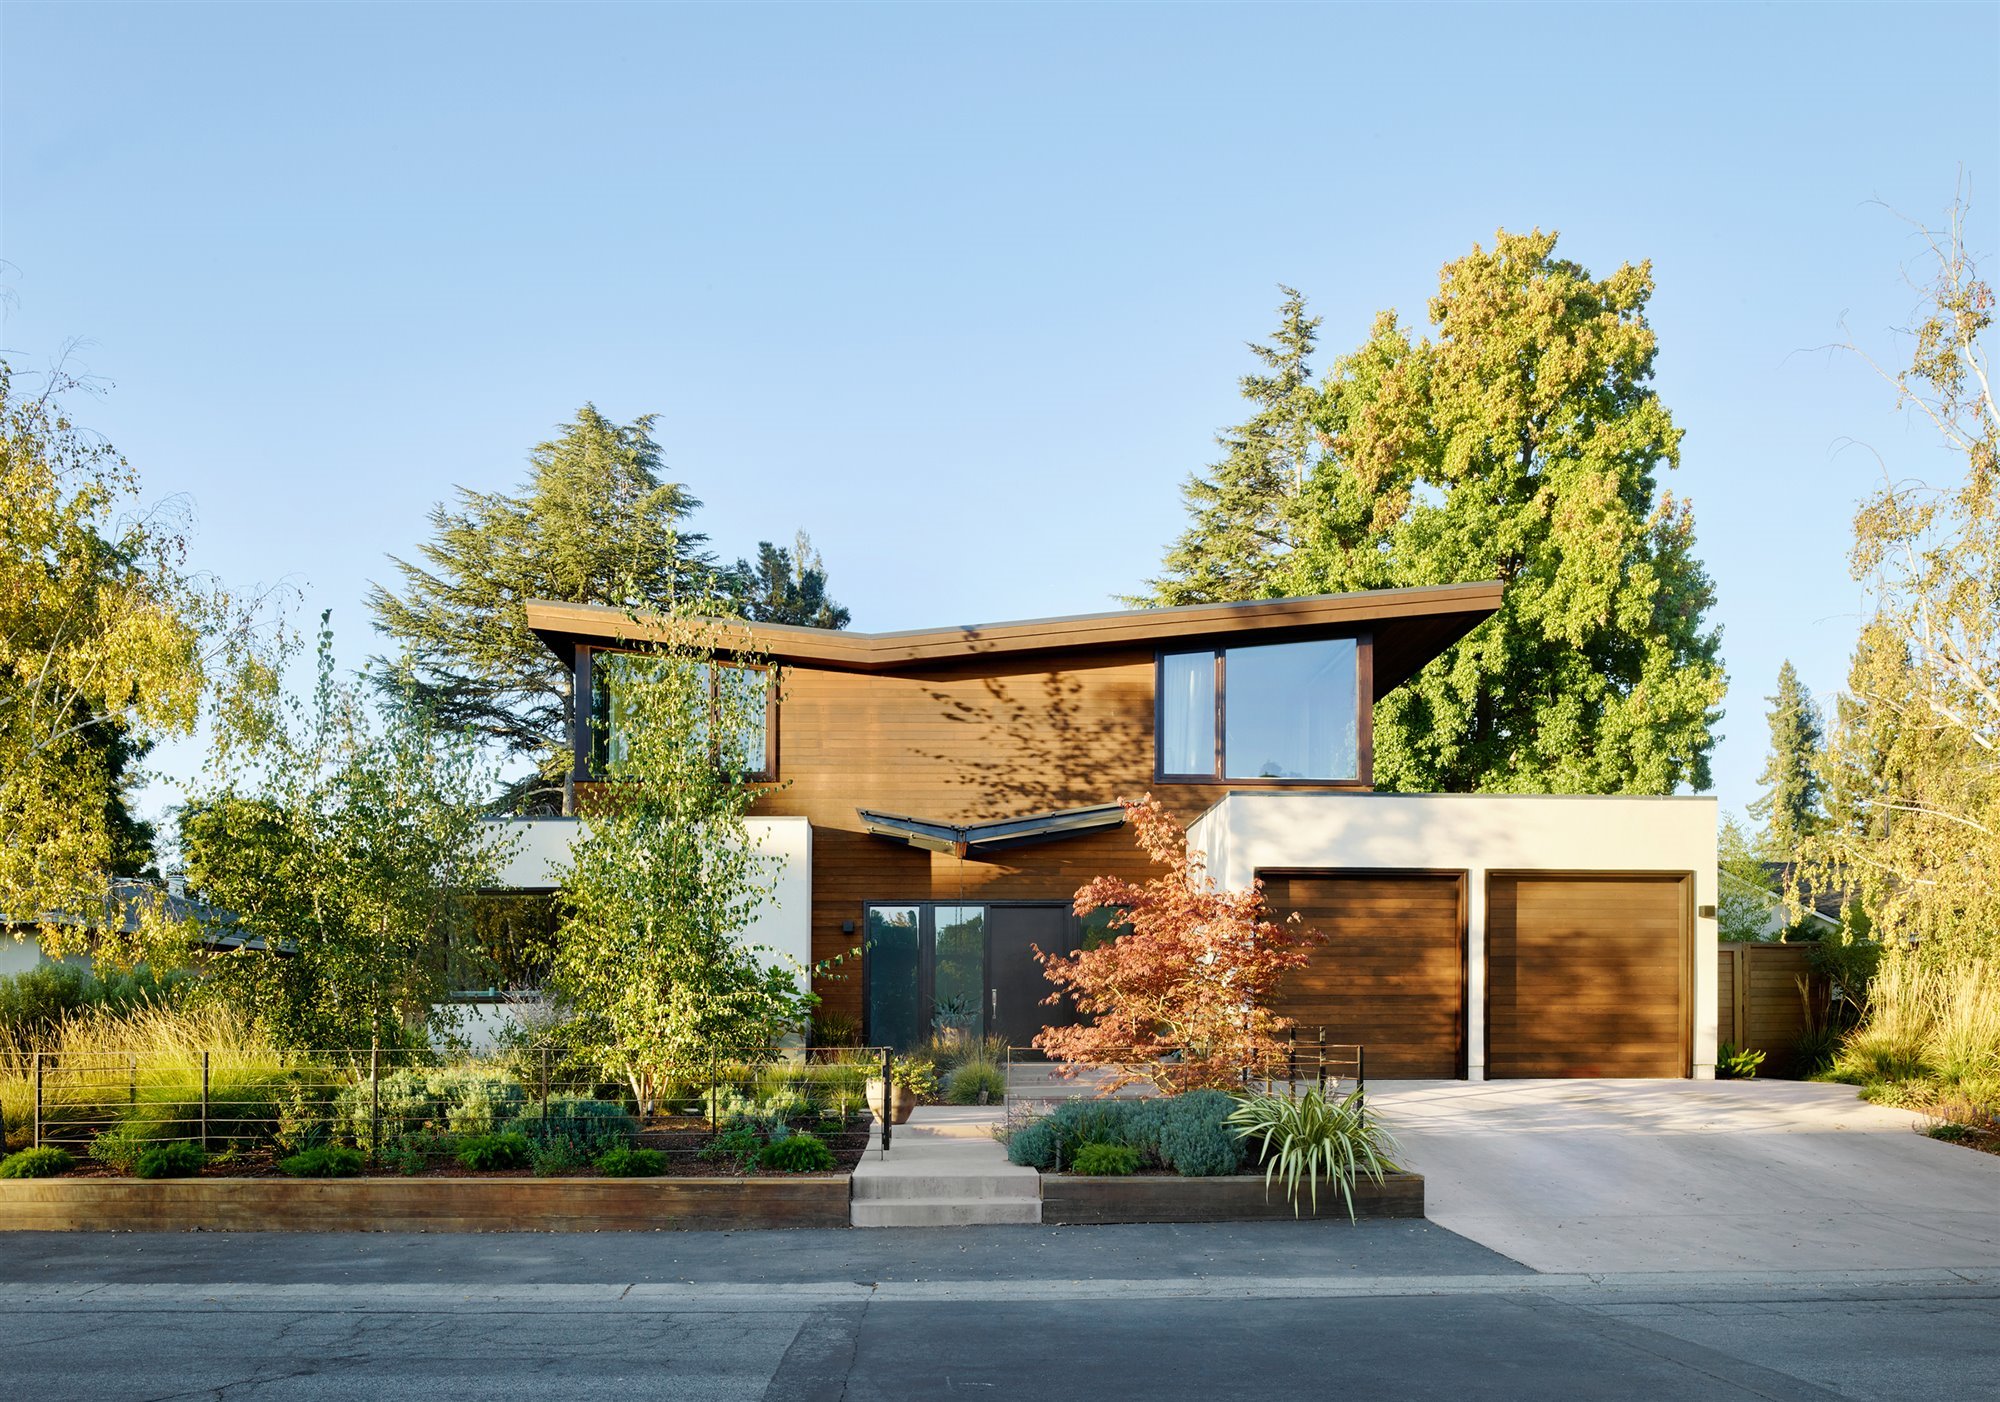 Una casa moderna con dos fachadas una de cristal y otra de madera